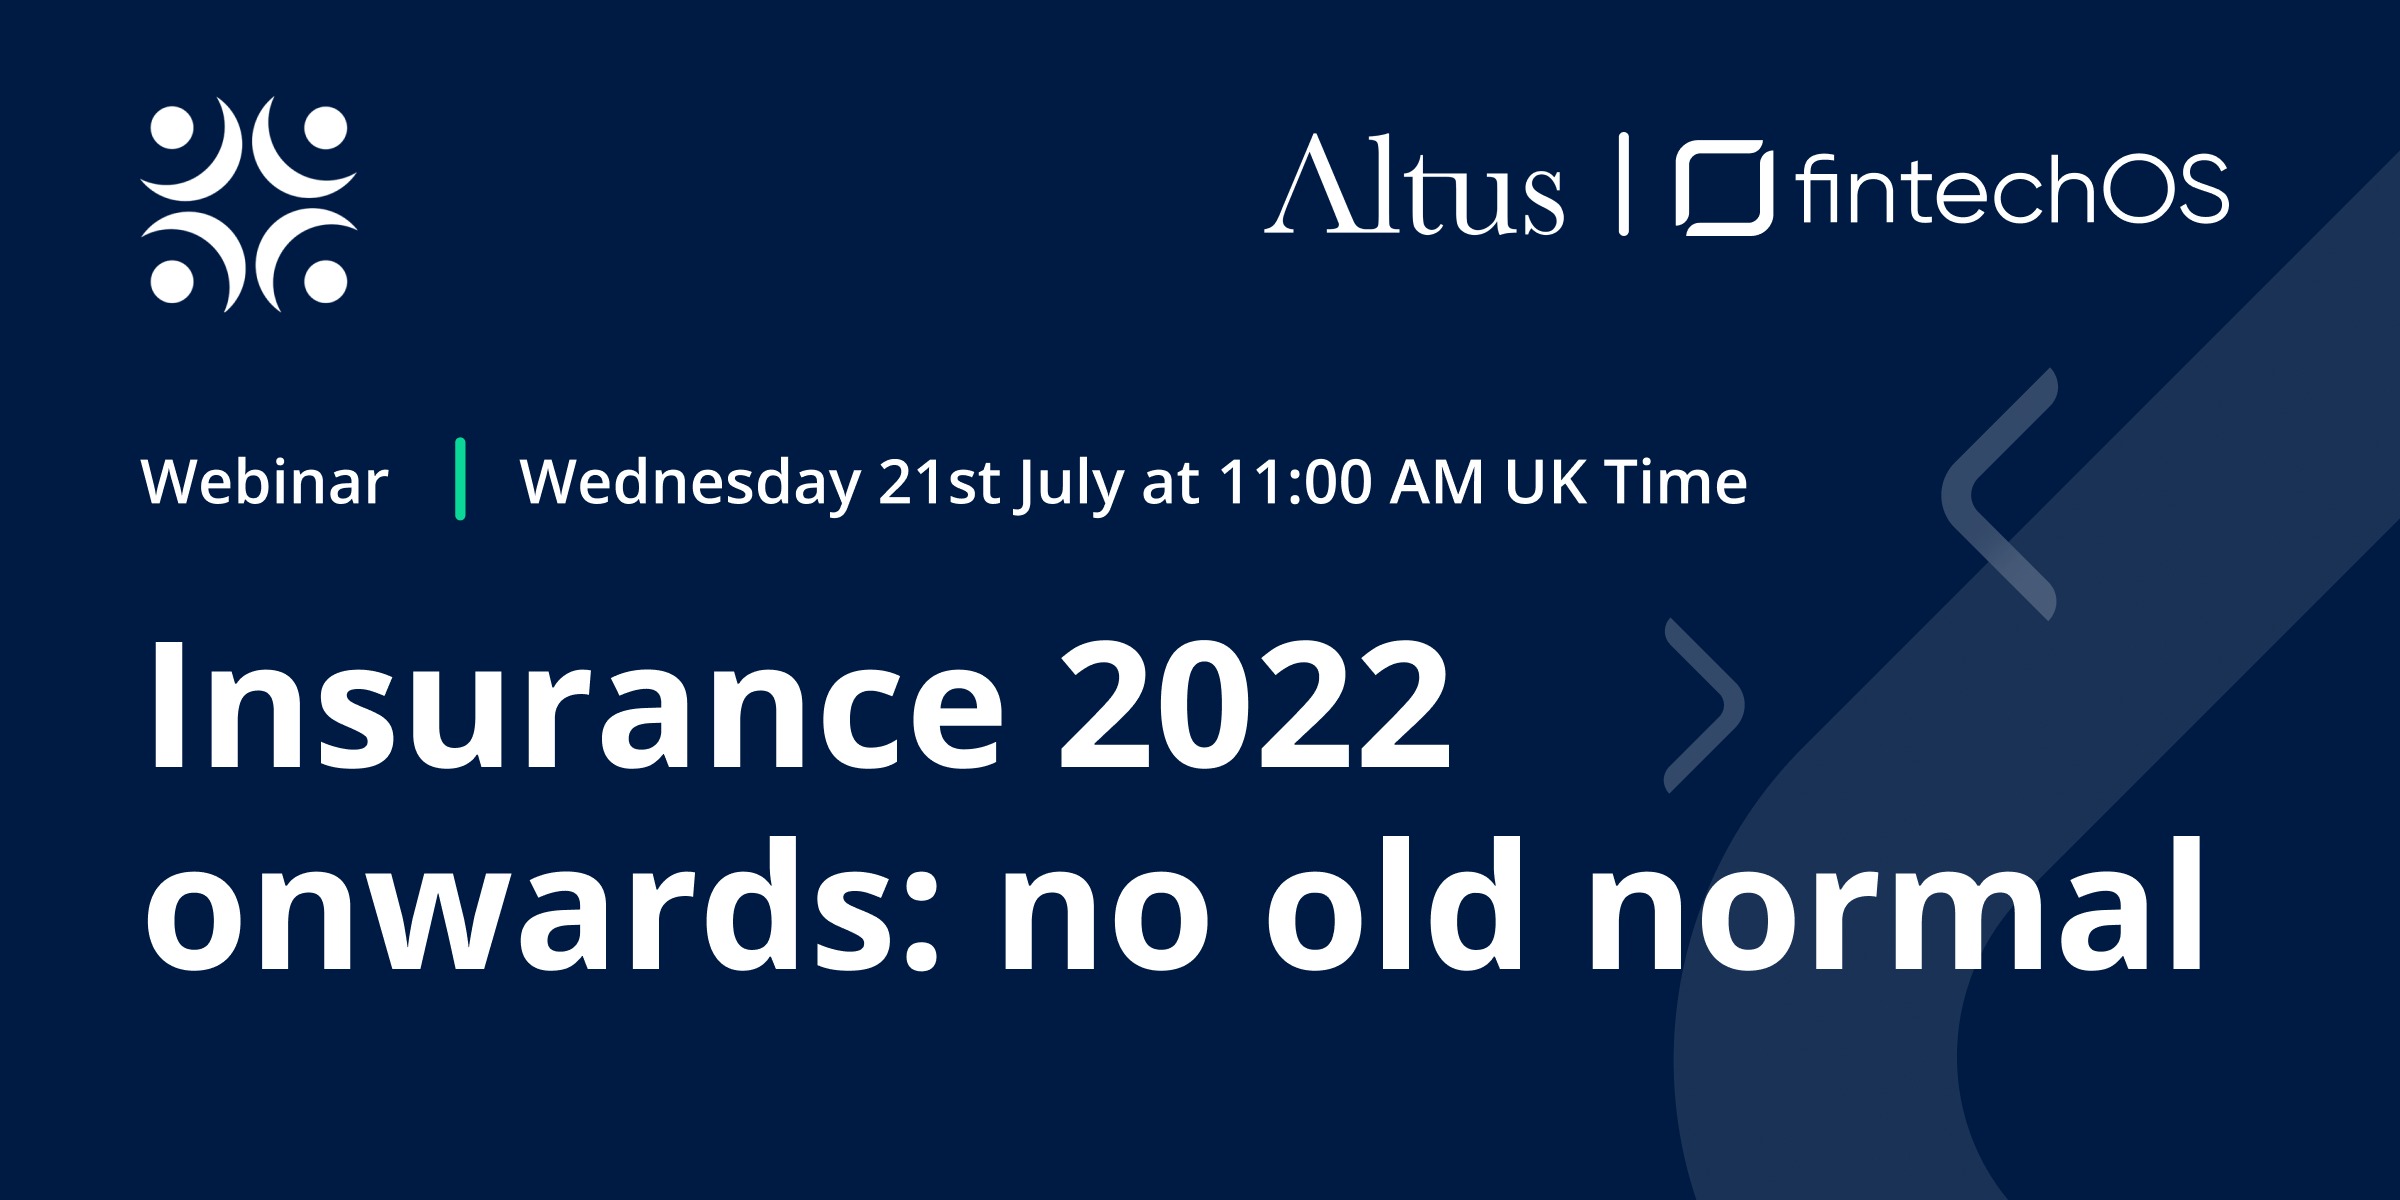 FintechOS - Insurance 2022 onwards: no old normal